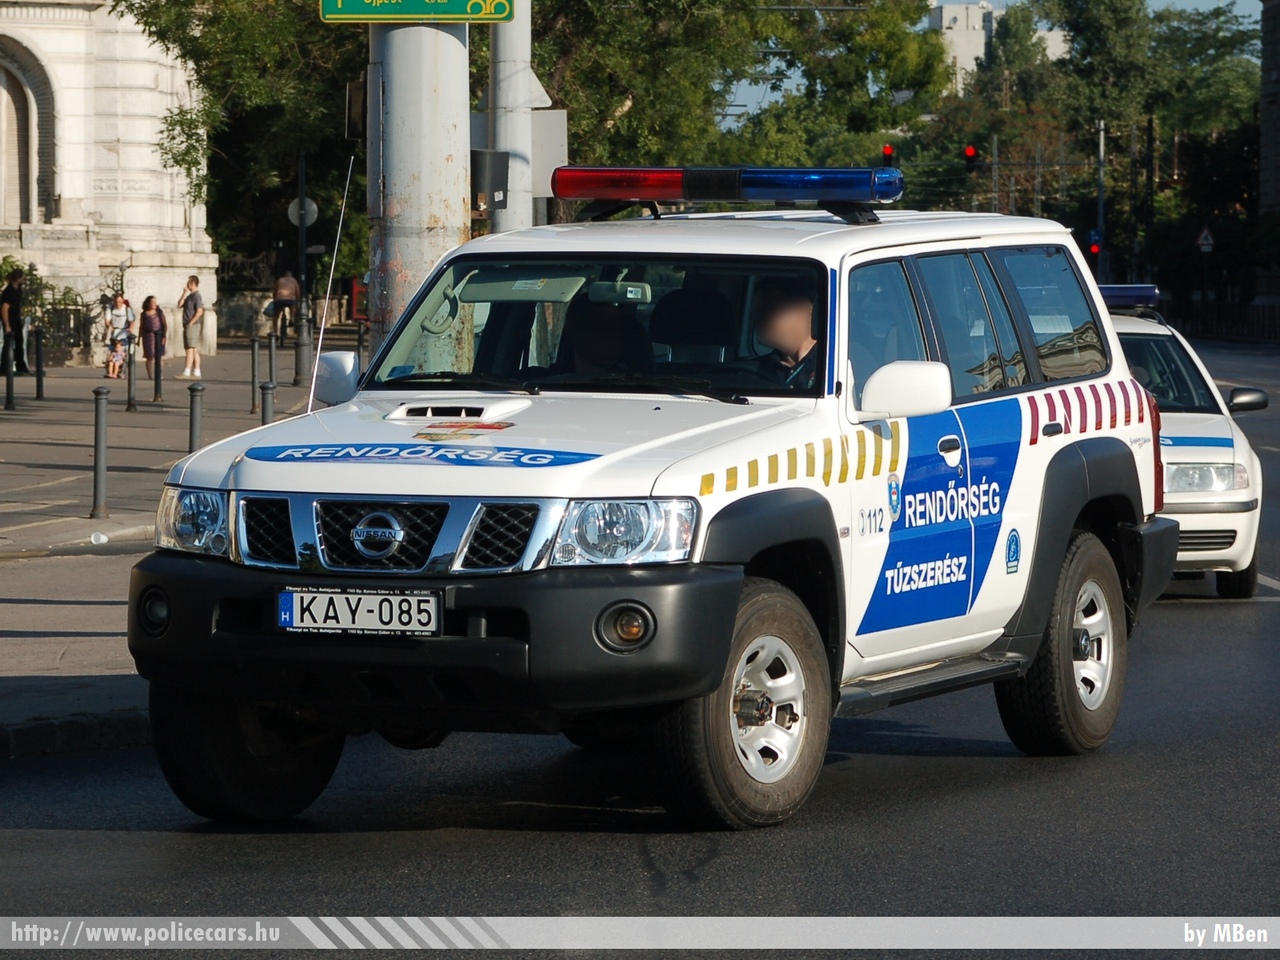 Nissan Patrol, fotó: MBen
Keywords: magyar Magyarország rendőr rendőrautó rendőrség Hungary hungarian police policecar KAY-085